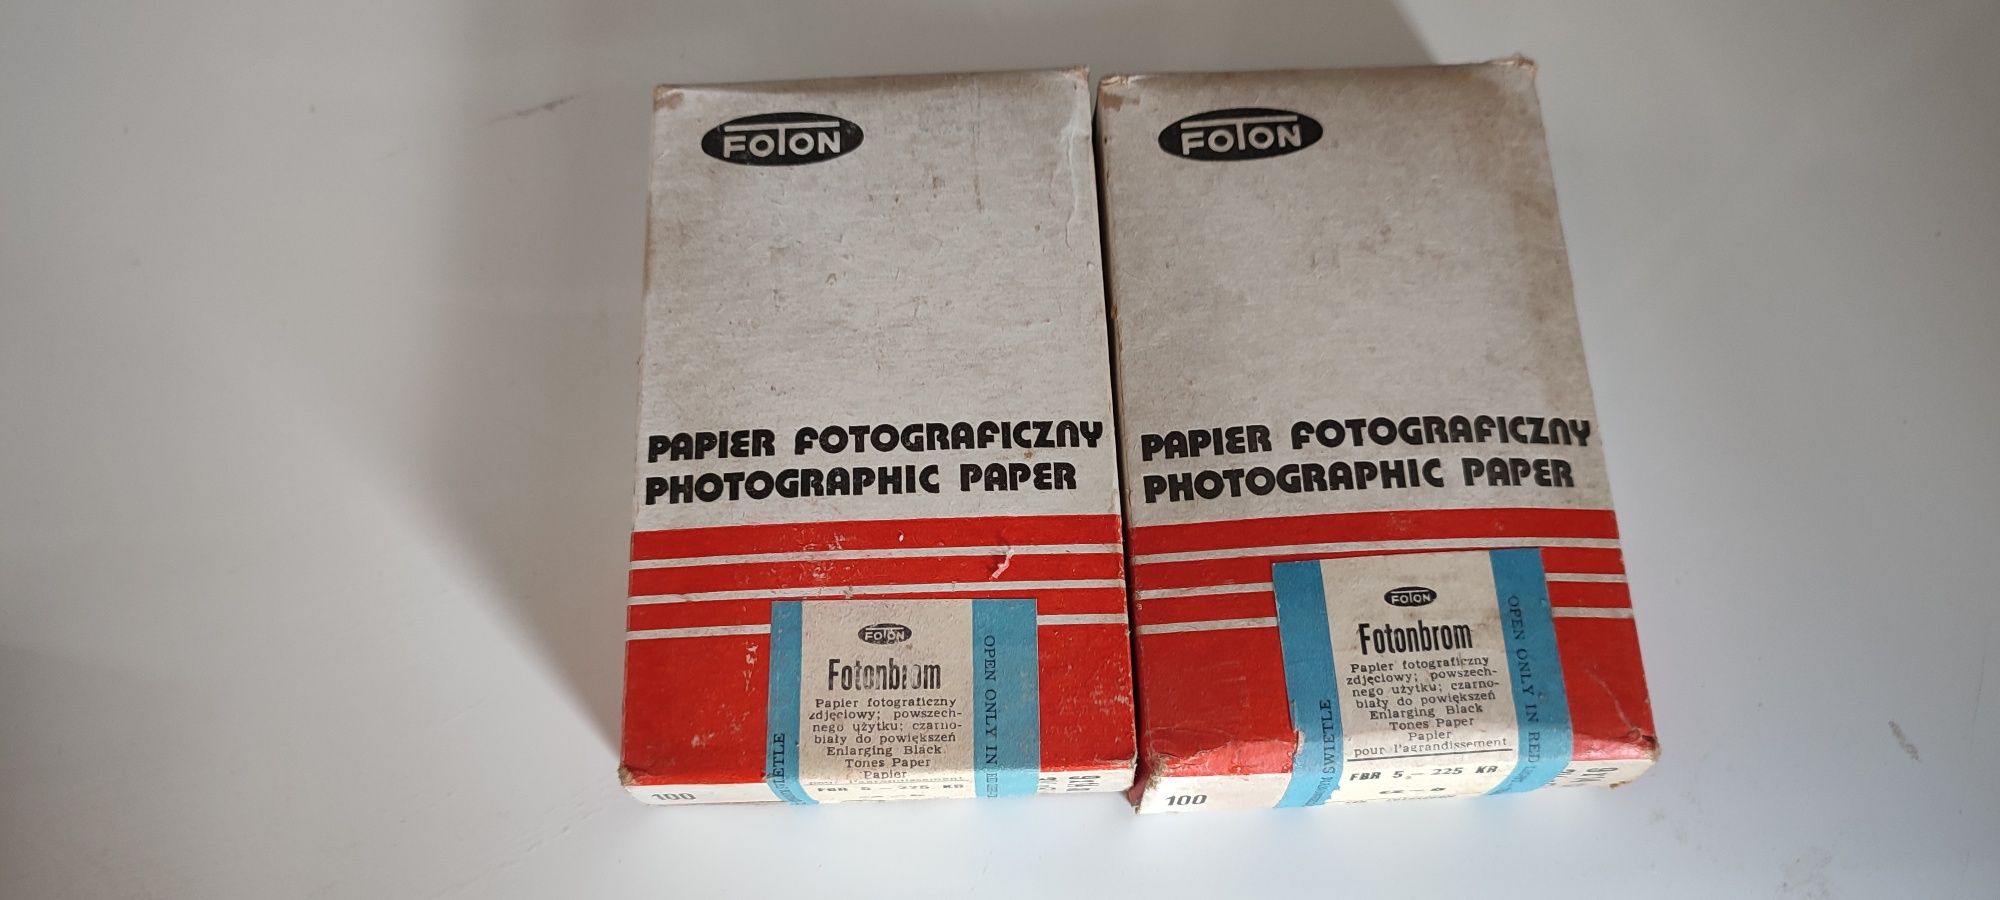 Papier fotograficzny Foton